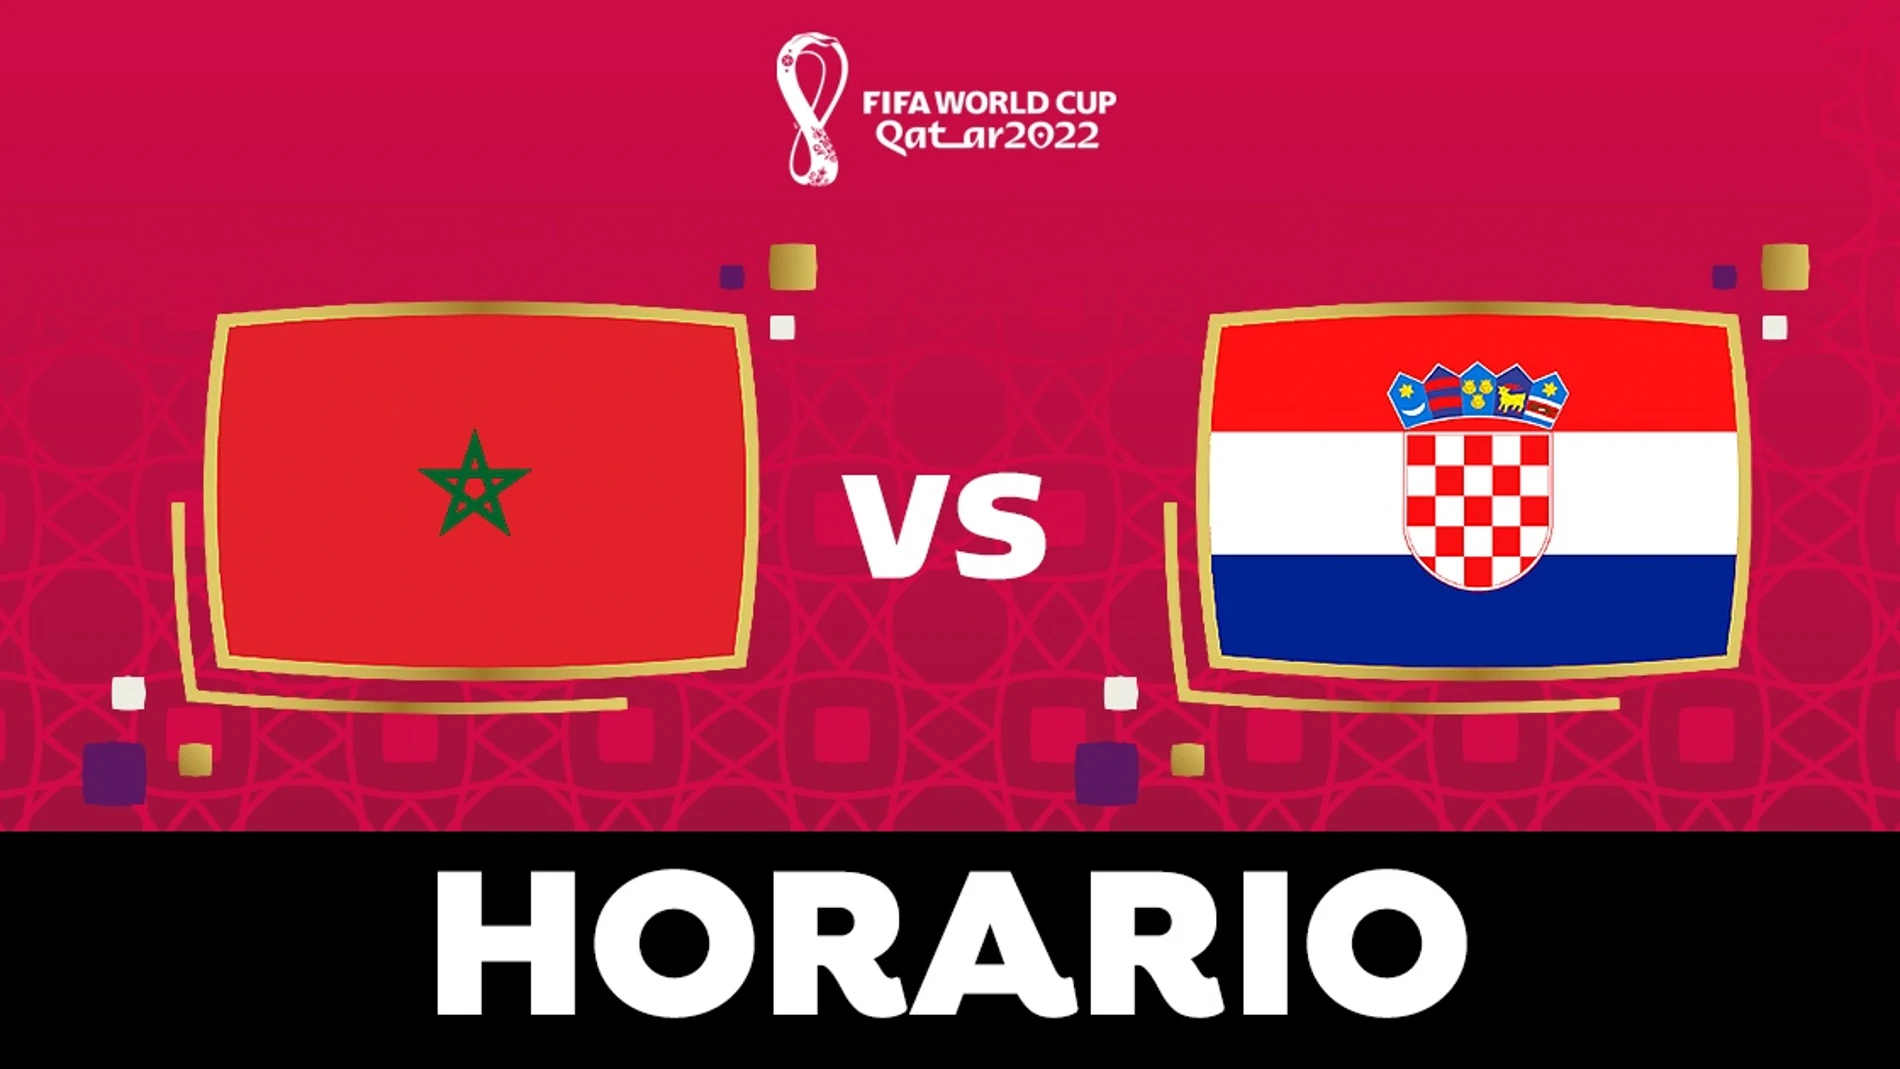 Marruecos - Croacia: Horario y dónde ver el partido del Mundial de Qatar 2022 en directo